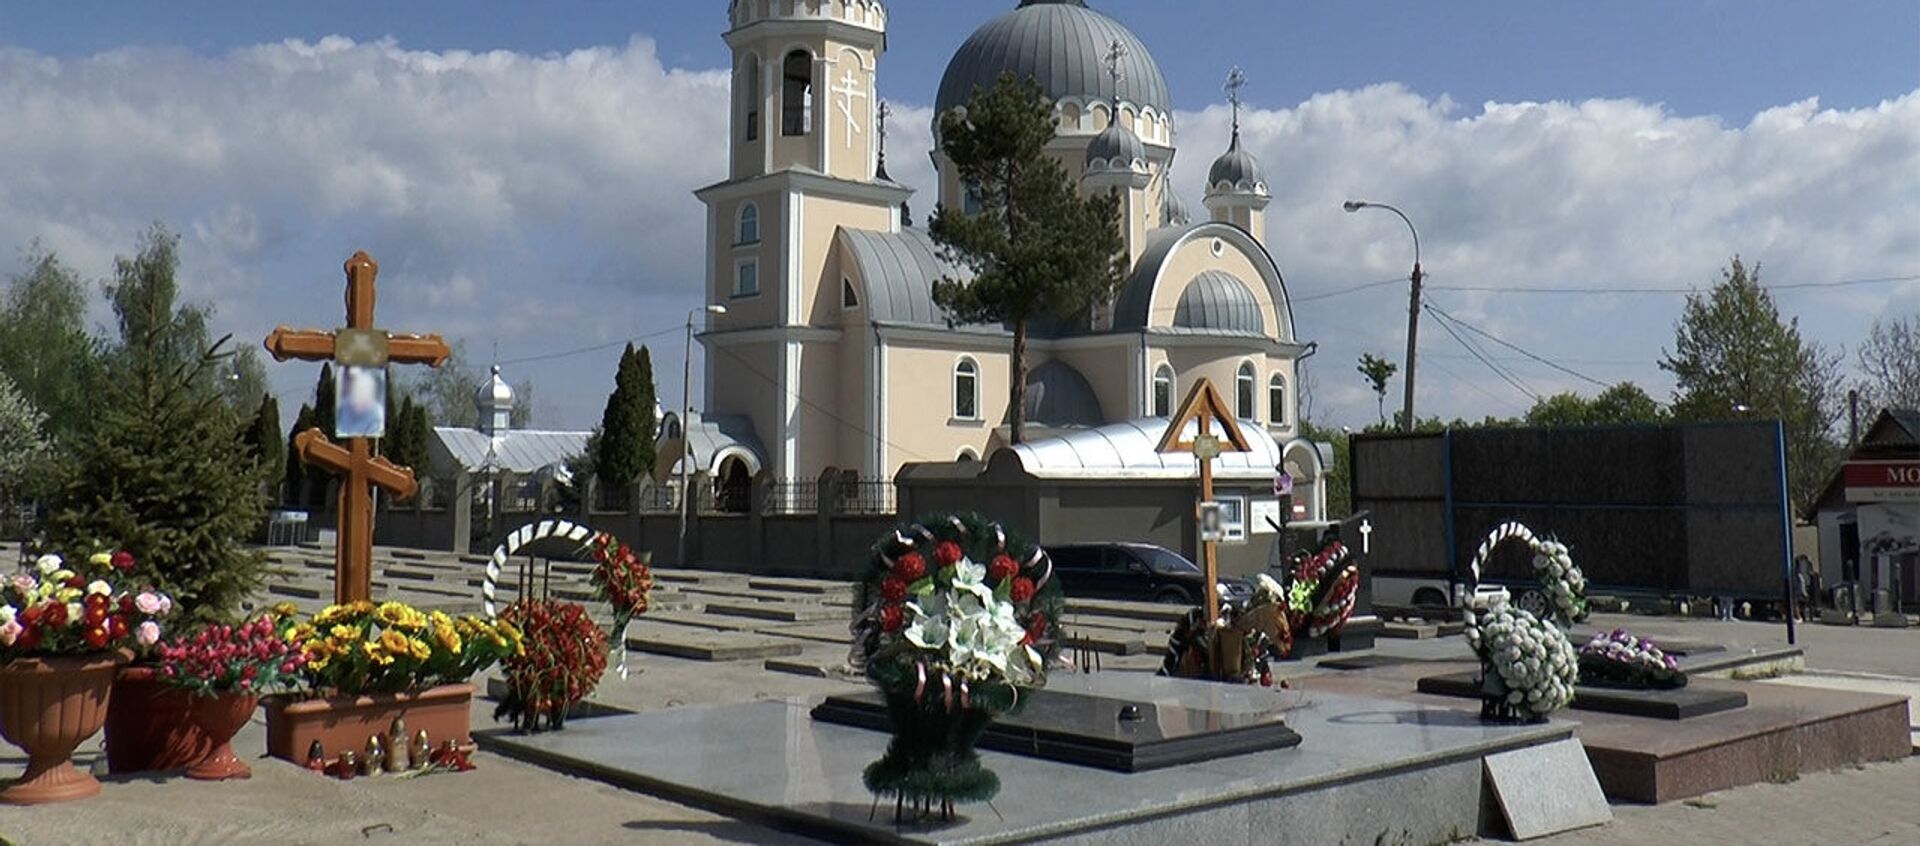 Радоница с закрытыми кладбищами в Кишиневе  - Sputnik Молдова, 1920, 04.05.2021